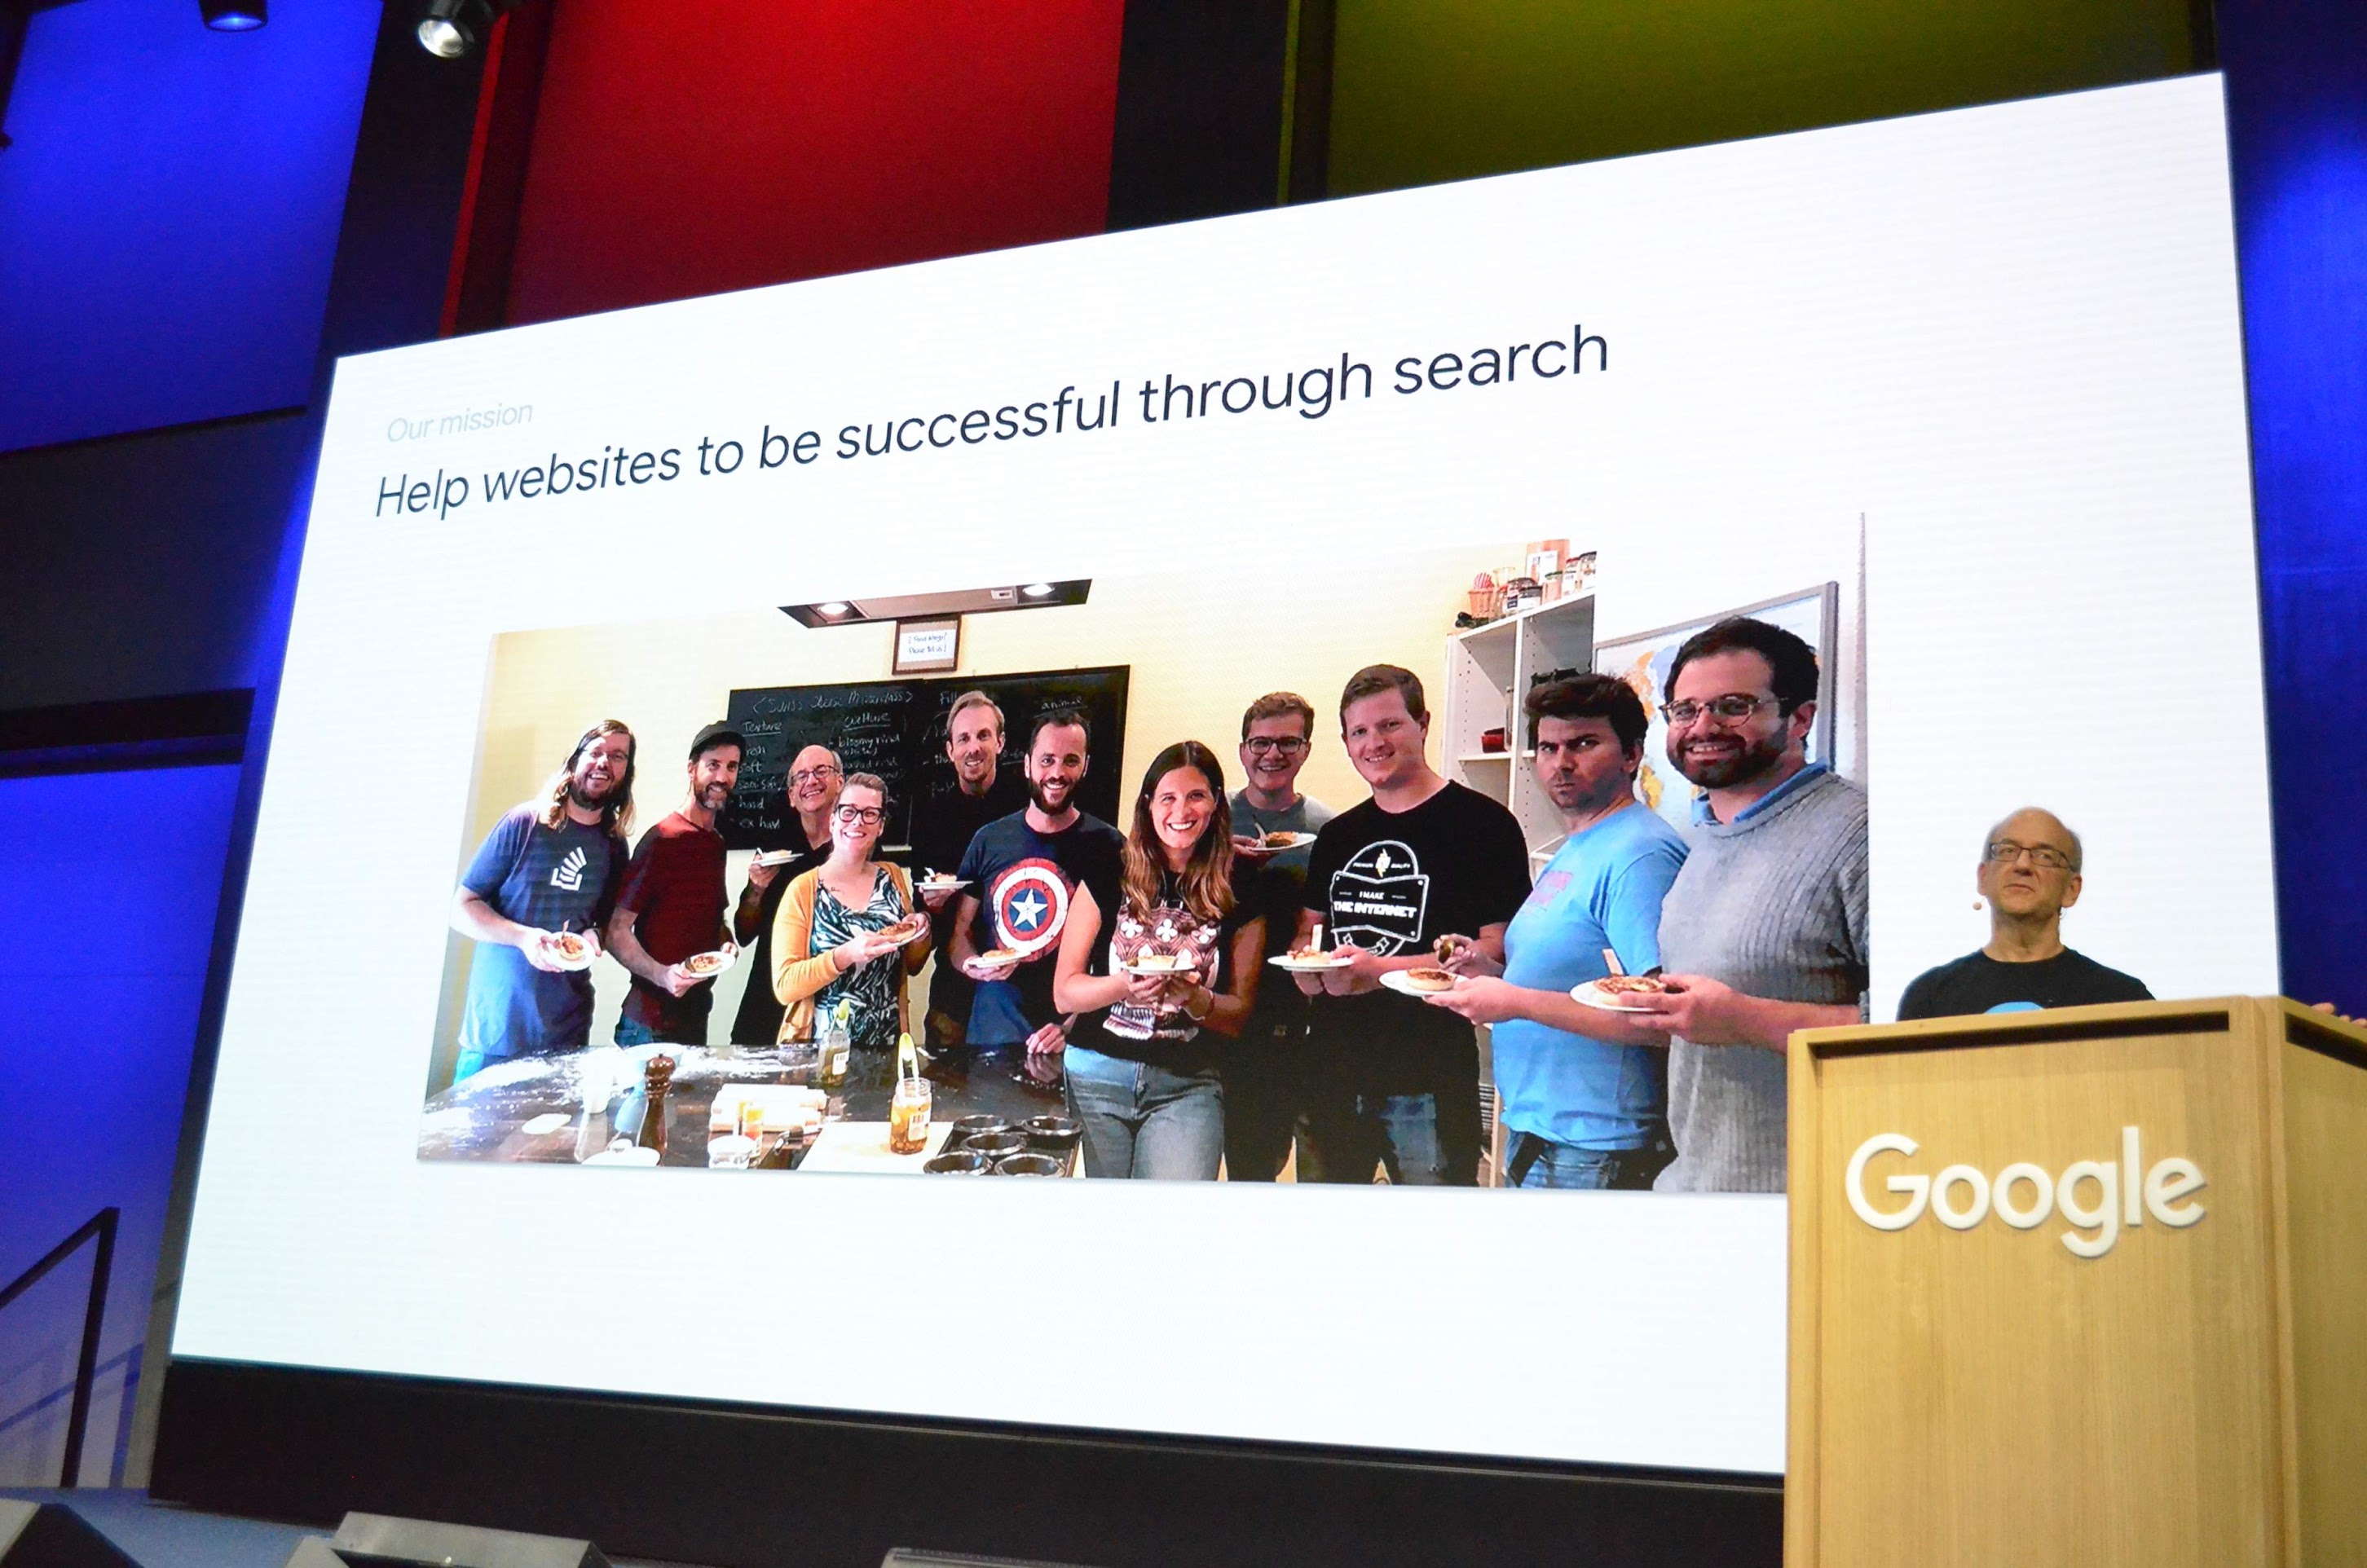 2019 年於蘇黎世舉辦的 Search Central Live 活動相片，John Mueller 在投影片前方，投影片標題為「Help websites to be successful through Search」(透過 Google 搜尋協助網站獲得成功)，以及位於 Google 的延伸搜尋關係團隊相片。